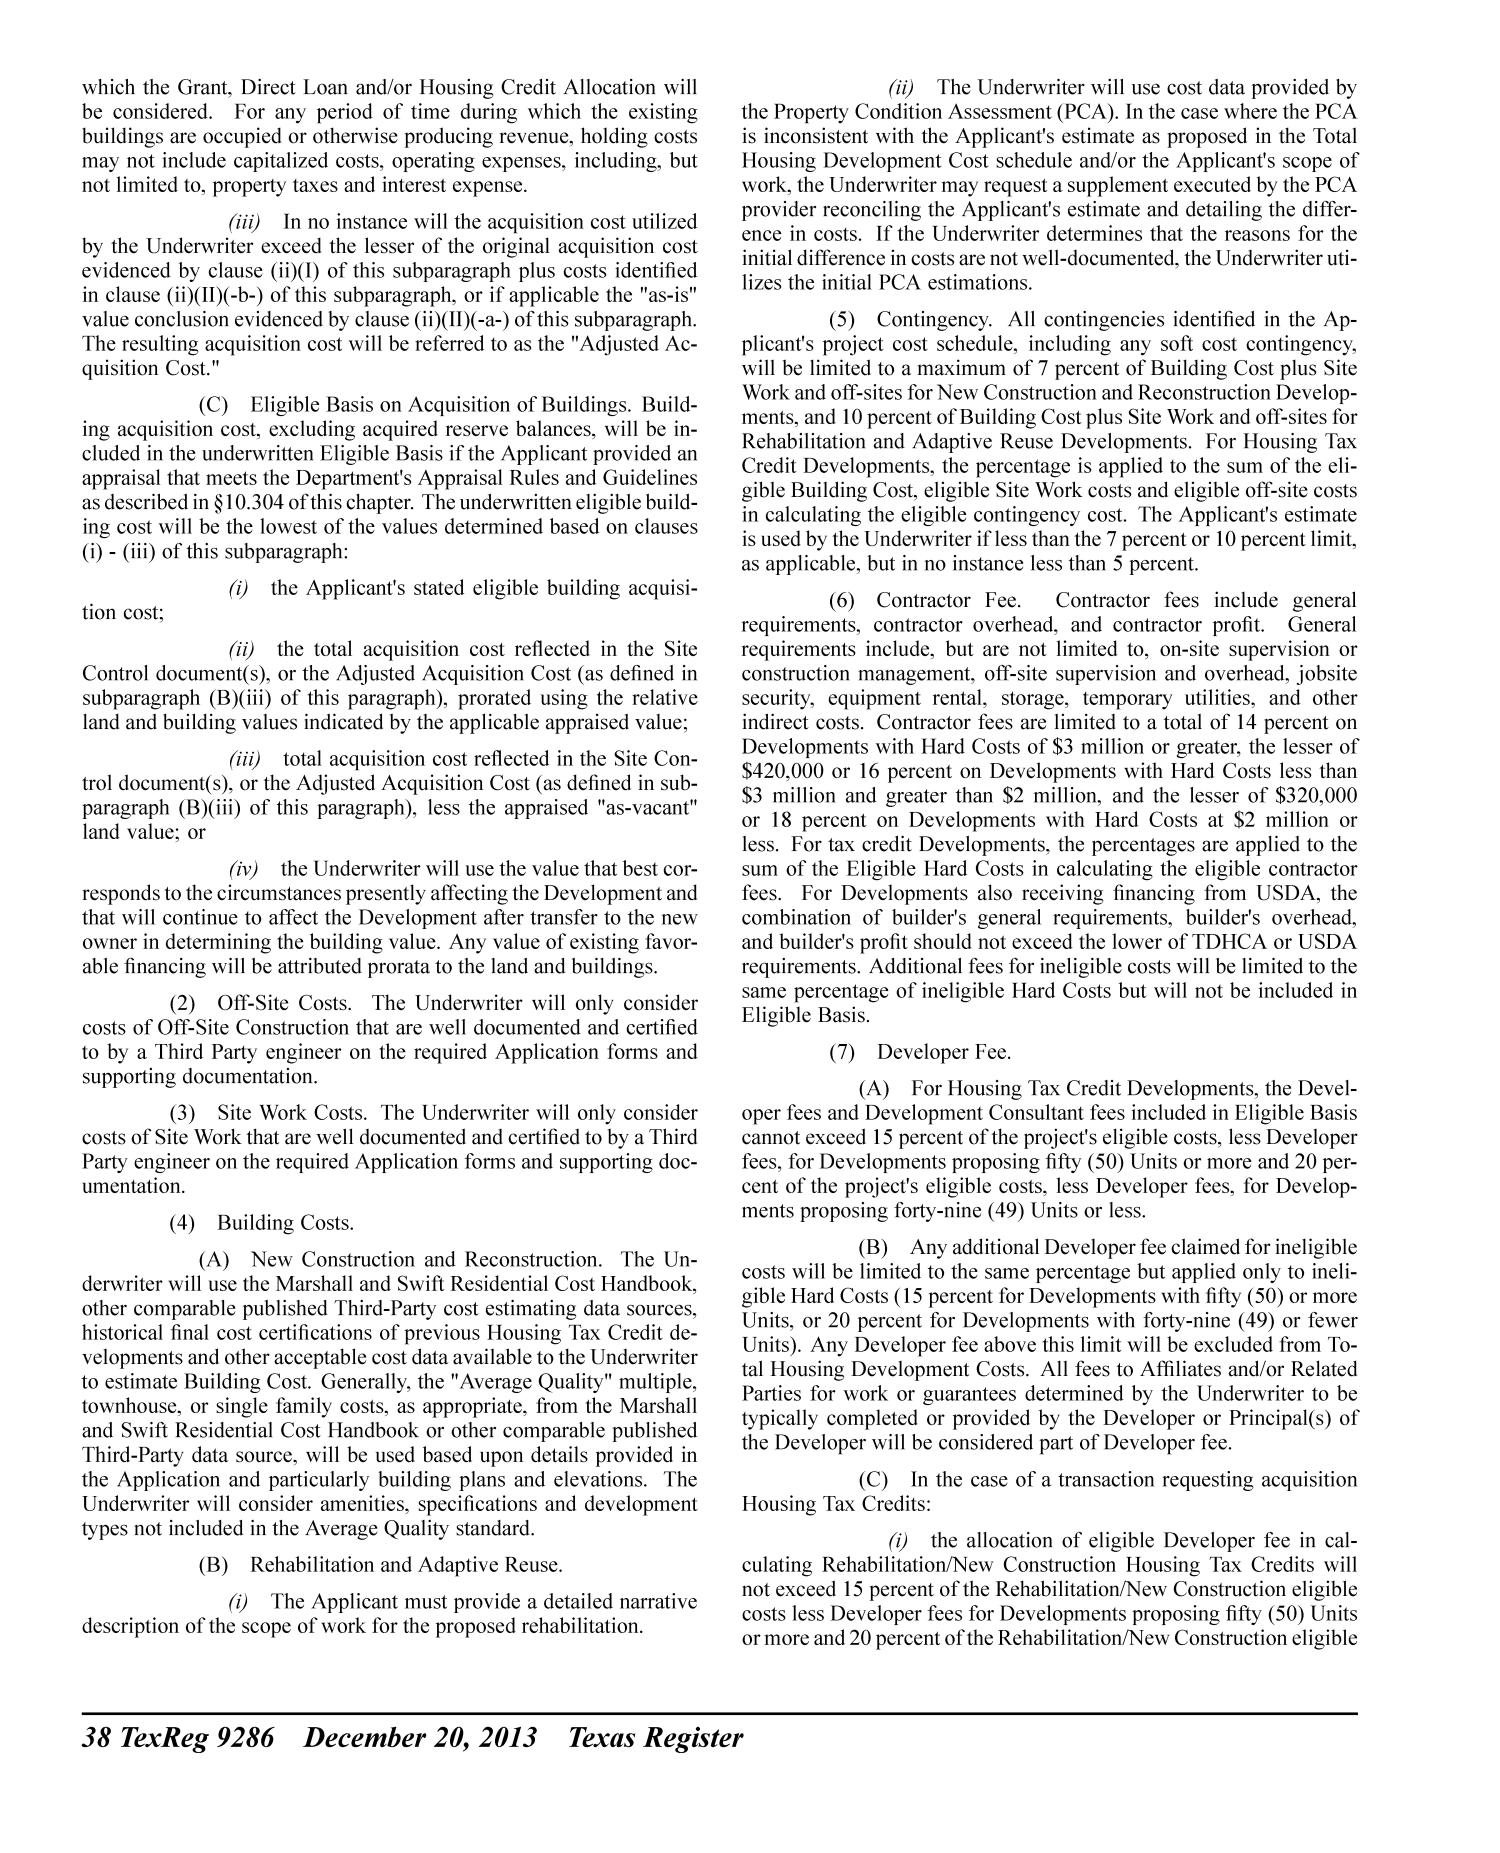 Texas Register, Volume 38, Number 51, Pages 9155-9408, December 20, 2013
                                                
                                                    9286
                                                